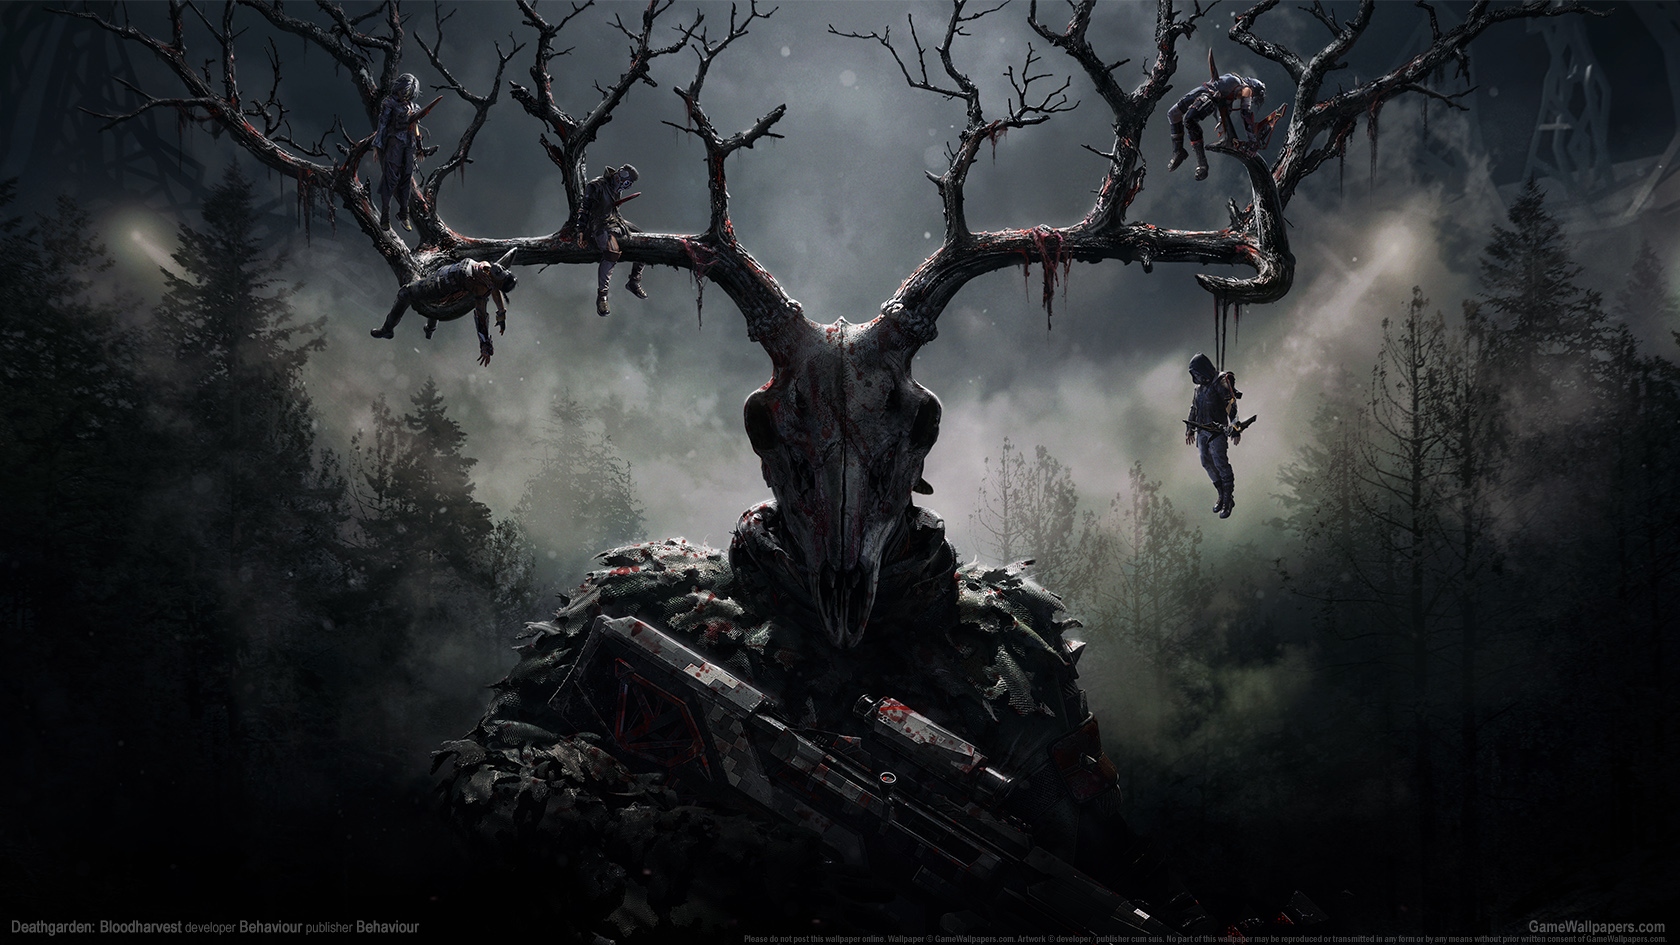 Deathgarden: Bloodharvest 1680x945 wallpaper or background 01